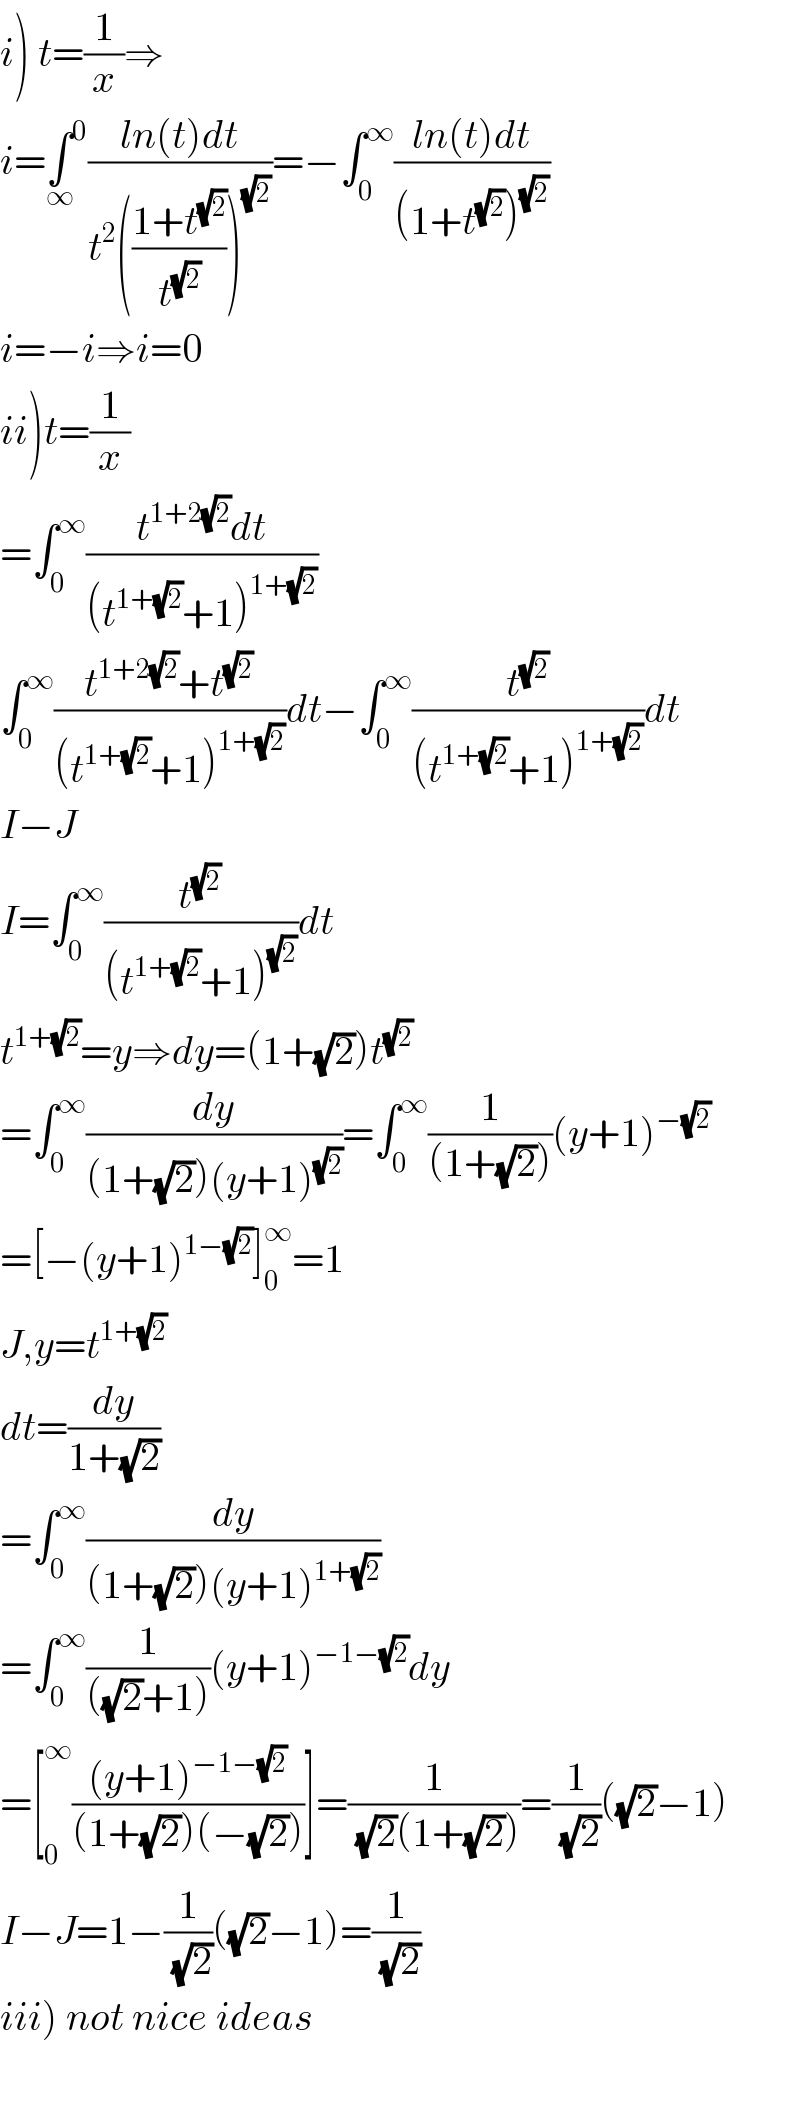 i) t=(1/x)⇒  i=∫^0 _∞ ((ln(t)dt)/(t^2 (((1+t^(√2) )/t^(√2) ))^(√2) ))=−∫_0 ^∞ ((ln(t)dt)/((1+t^(√2) )^(√2) ))   i=−i⇒i=0  ii)t=(1/x)  =∫_0 ^∞ ((t^(1+2(√2)) dt)/((t^(1+(√2)) +1)^(1+(√2)) ))  ∫_0 ^∞ ((t^(1+2(√2)) +t^(√2) )/((t^(1+(√2)) +1)^(1+(√2)) ))dt−∫_0 ^∞ (t^(√2) /((t^(1+(√2)) +1)^(1+(√2)) ))dt  I−J  I=∫_0 ^∞ (t^(√2) /((t^(1+(√2)) +1)^(√2) ))dt  t^(1+(√2)) =y⇒dy=(1+(√2))t^(√2)   =∫_0 ^∞ (dy/((1+(√2))(y+1)^(√2) ))=∫_0 ^∞ (1/((1+(√2))))(y+1)^(−(√2))   =[−(y+1)^(1−(√2)) ]_0 ^∞ =1  J,y=t^(1+(√2))   dt=(dy/(1+(√2)))  =∫_0 ^∞ (dy/((1+(√2))(y+1)^(1+(√2)) ))  =∫_0 ^∞ (1/(((√2)+1)))(y+1)^(−1−(√2)) dy  =[_0 ^∞ (((y+1)^(−1−(√2)) )/((1+(√2))(−(√2))))]=(1/( (√2)(1+(√2))))=(1/( (√2)))((√2)−1)  I−J=1−(1/( (√2)))((√2)−1)=(1/( (√2)))  iii) not nice ideas    